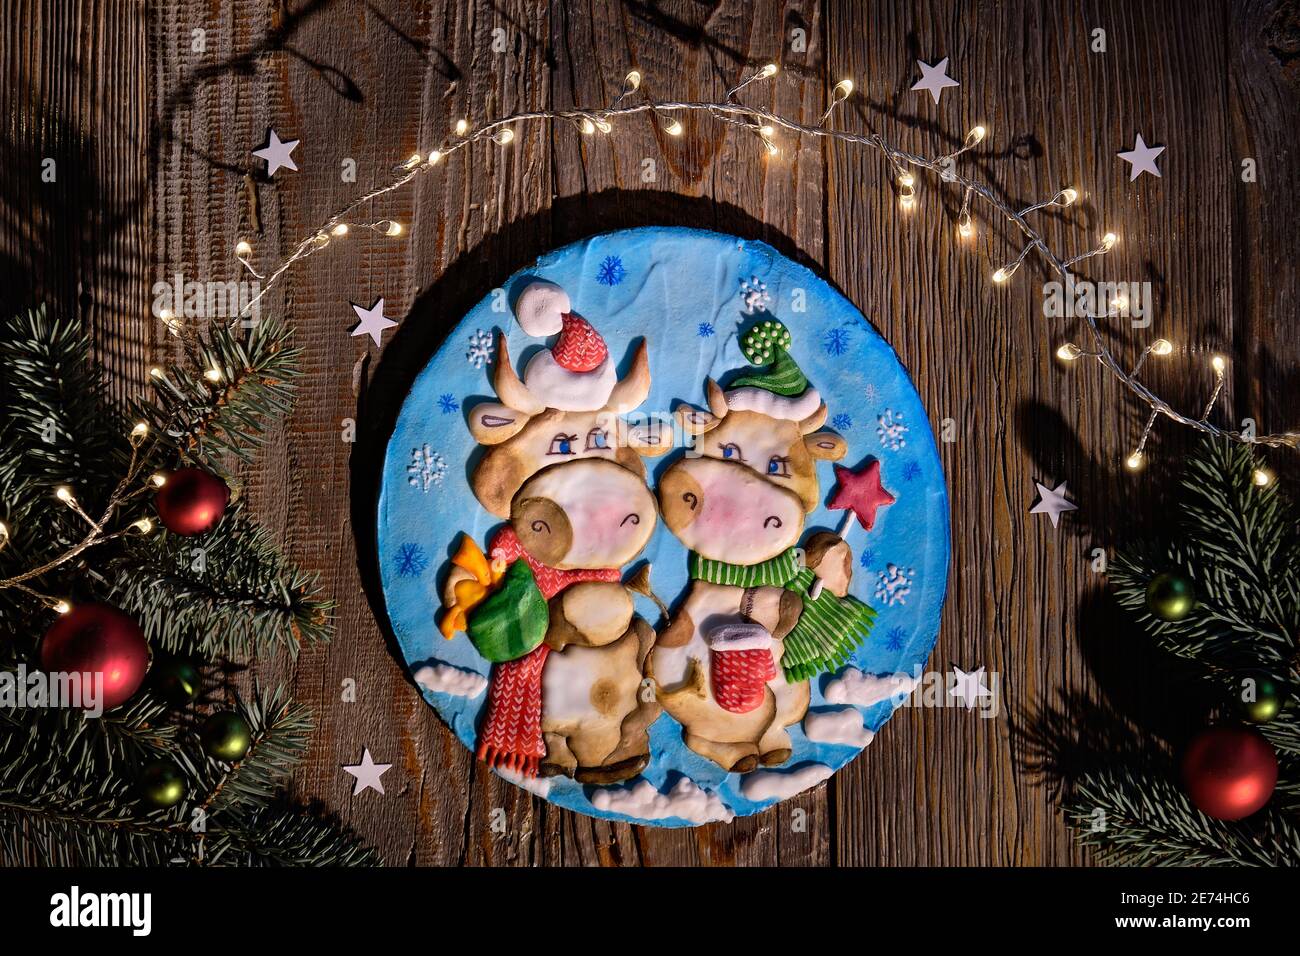 Dekoriert Lebkuchen mit zwei Comic-Kuh-Figuren. Weihnachtliche Wohnung mit Tannenzweigen, roten Kugeln und Sternen Konfetti. Dunkle Holzbretter, Draufsicht Stockfoto